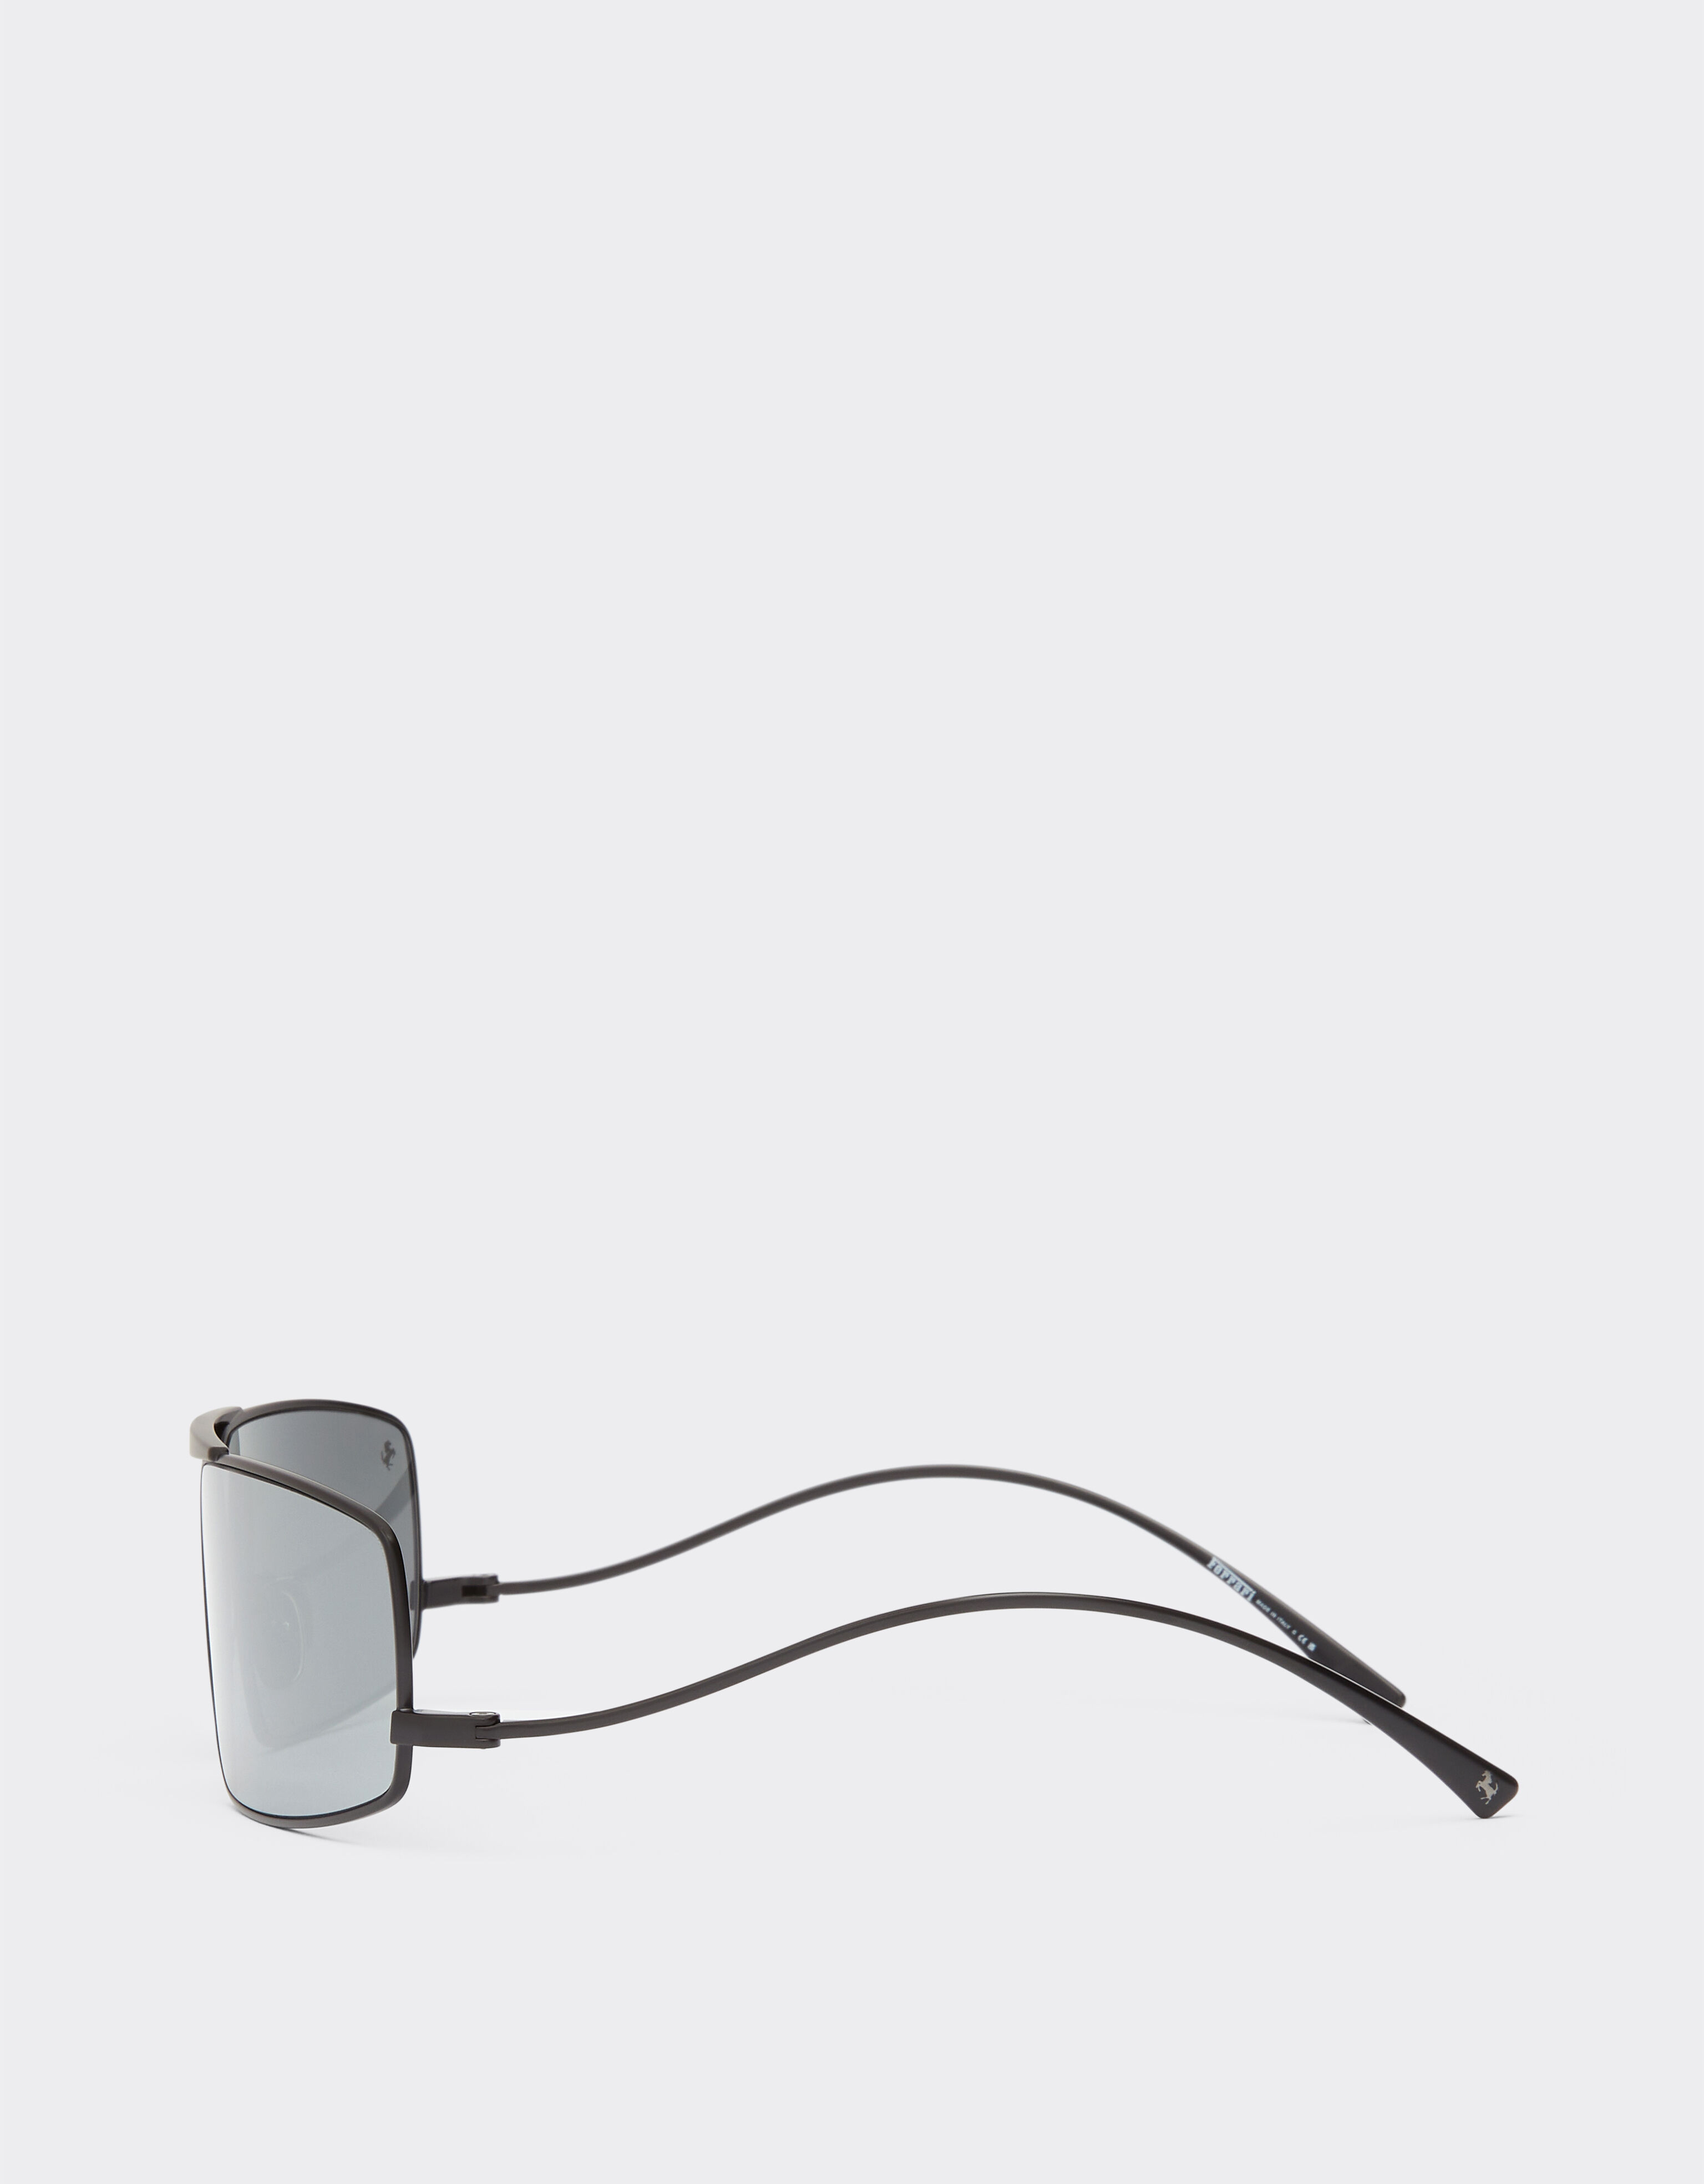 Ferrari 法拉利银色镜面镜片黑色金属太阳镜 哑光黑 F1210f